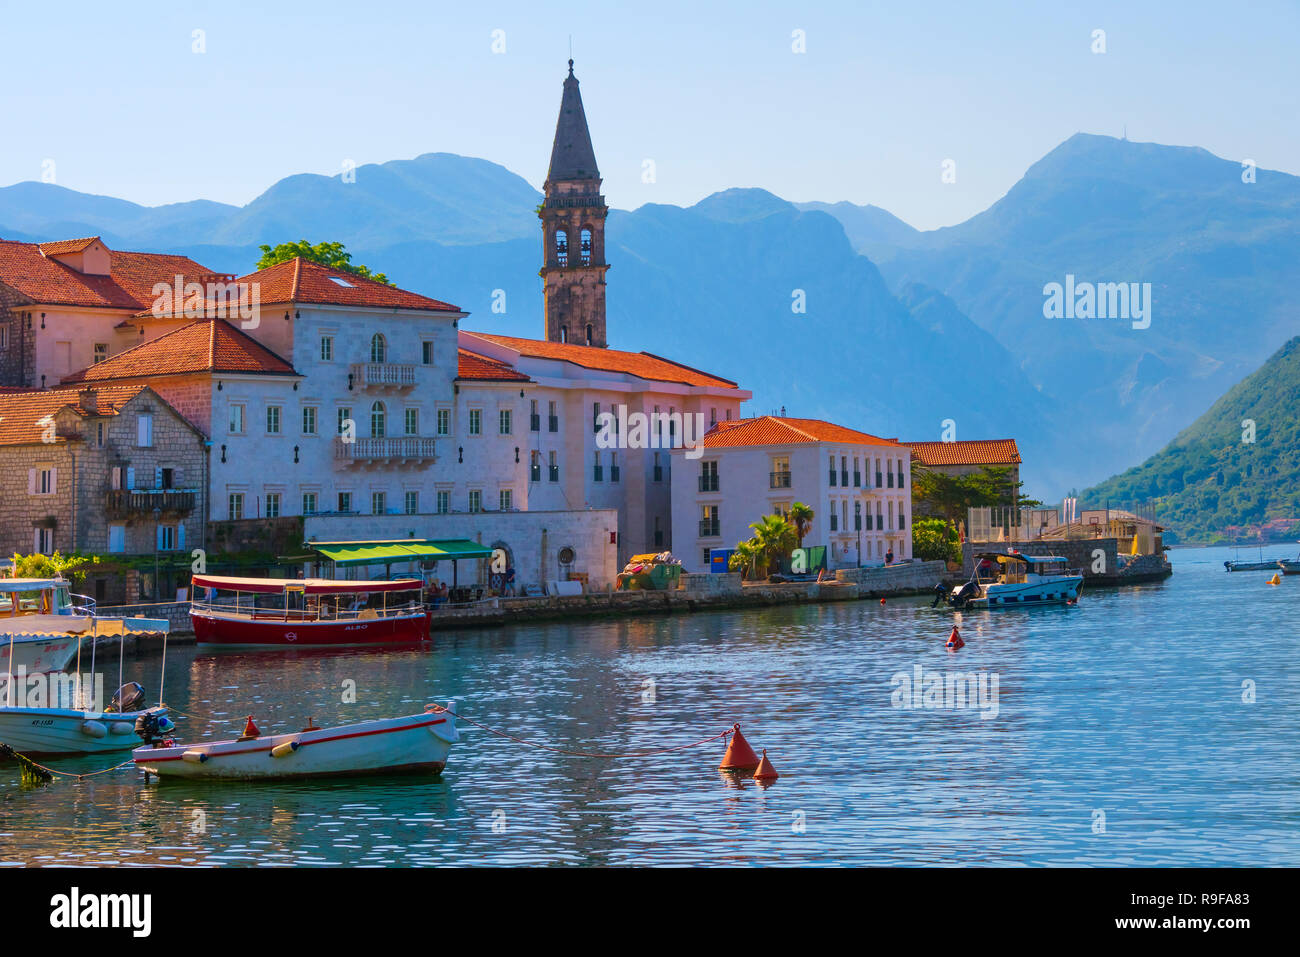 La torre de la iglesia y casas en la costa del Adriático, Perast, Montenegro Foto de stock